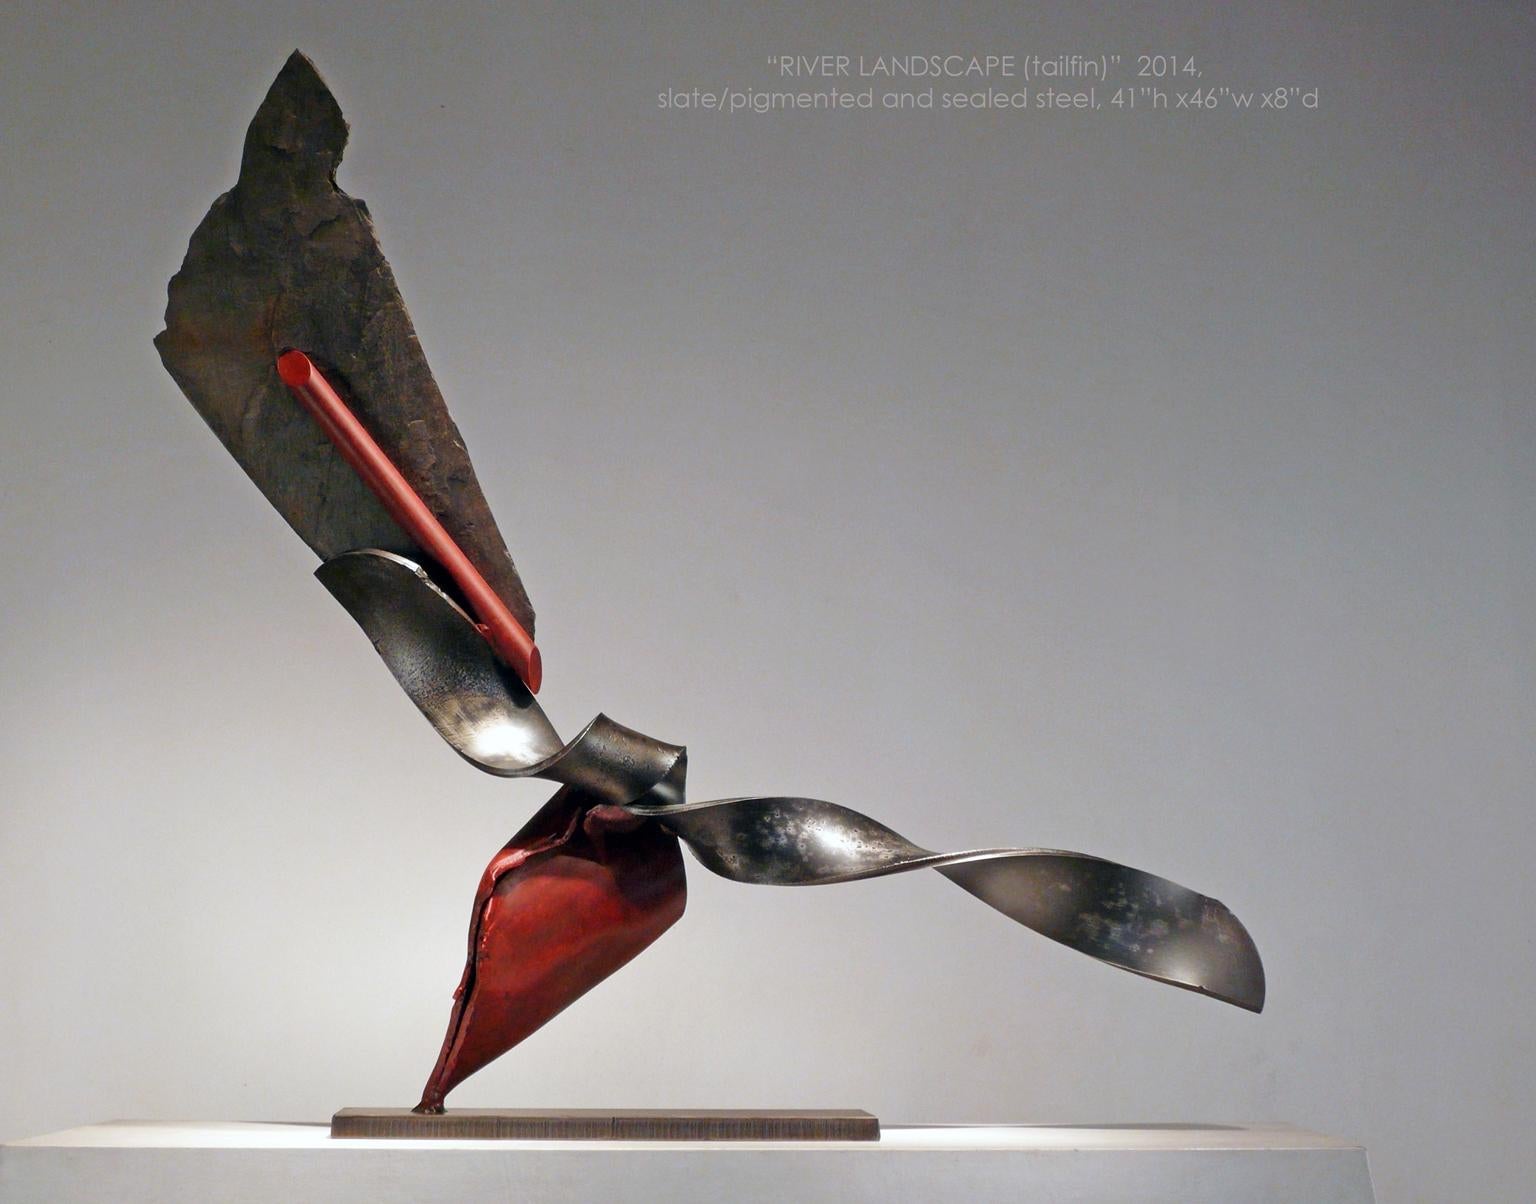 « RIVER LANDSCAPE (tailfin) », sculpture abstraite industrielle en métal et pierre - Sculpture de John Van Alstine